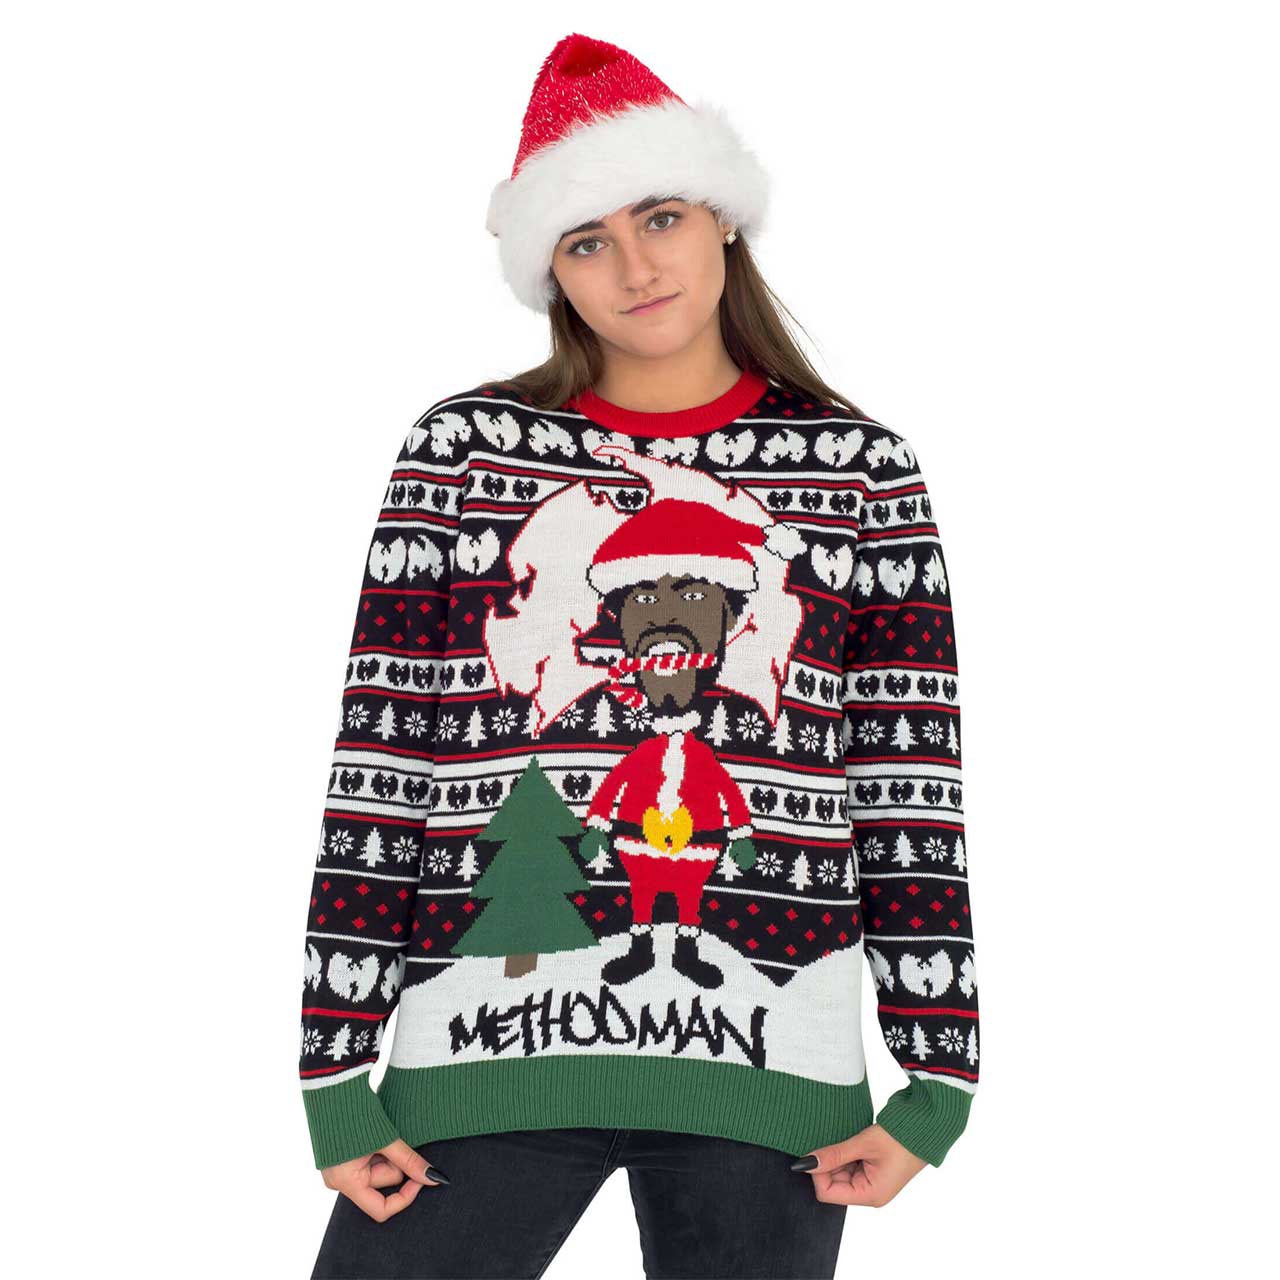 Women’s Method Man Ugly Christmas Sweater